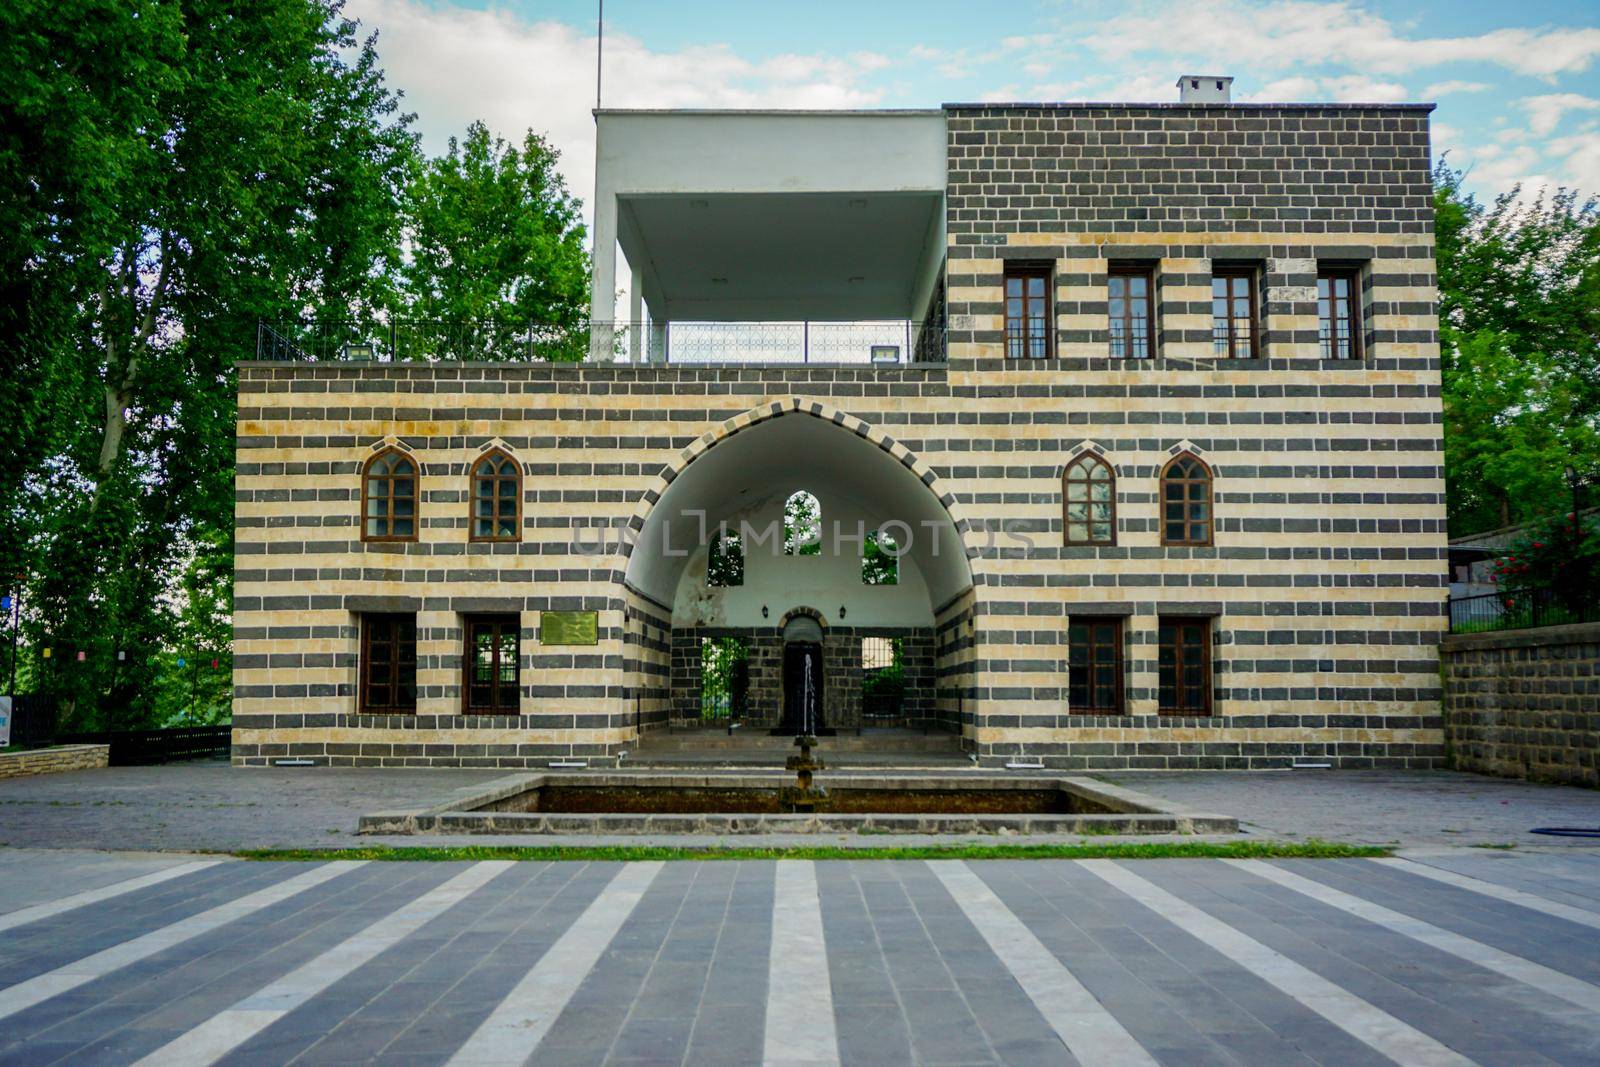 8 May 2022 Diyarbakir Turkey. Semanoglu Mansion known as Ataturk Pavilion in Diyarbakir